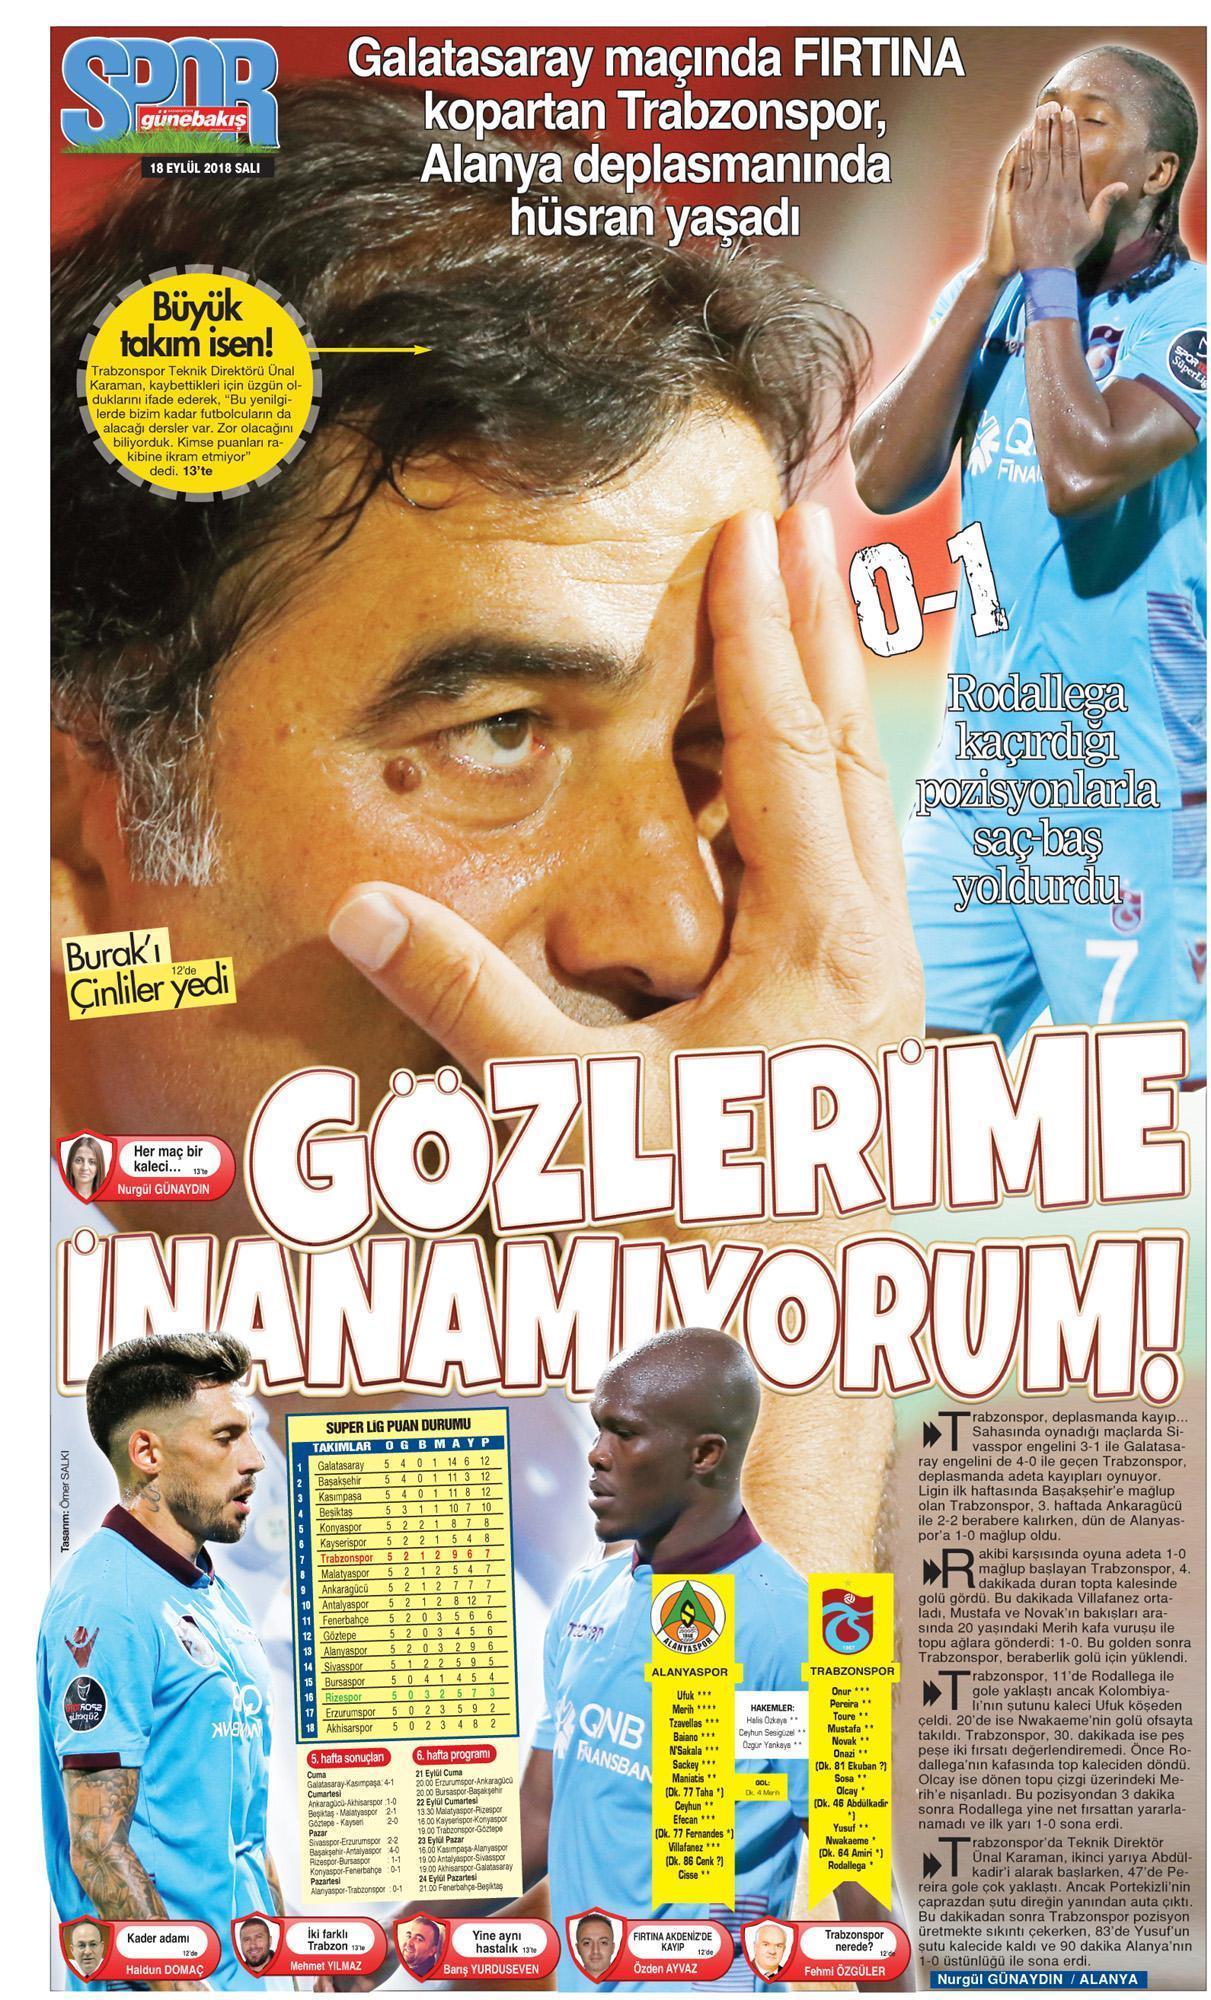 Trabzonspora yerel gazetelerden tepki